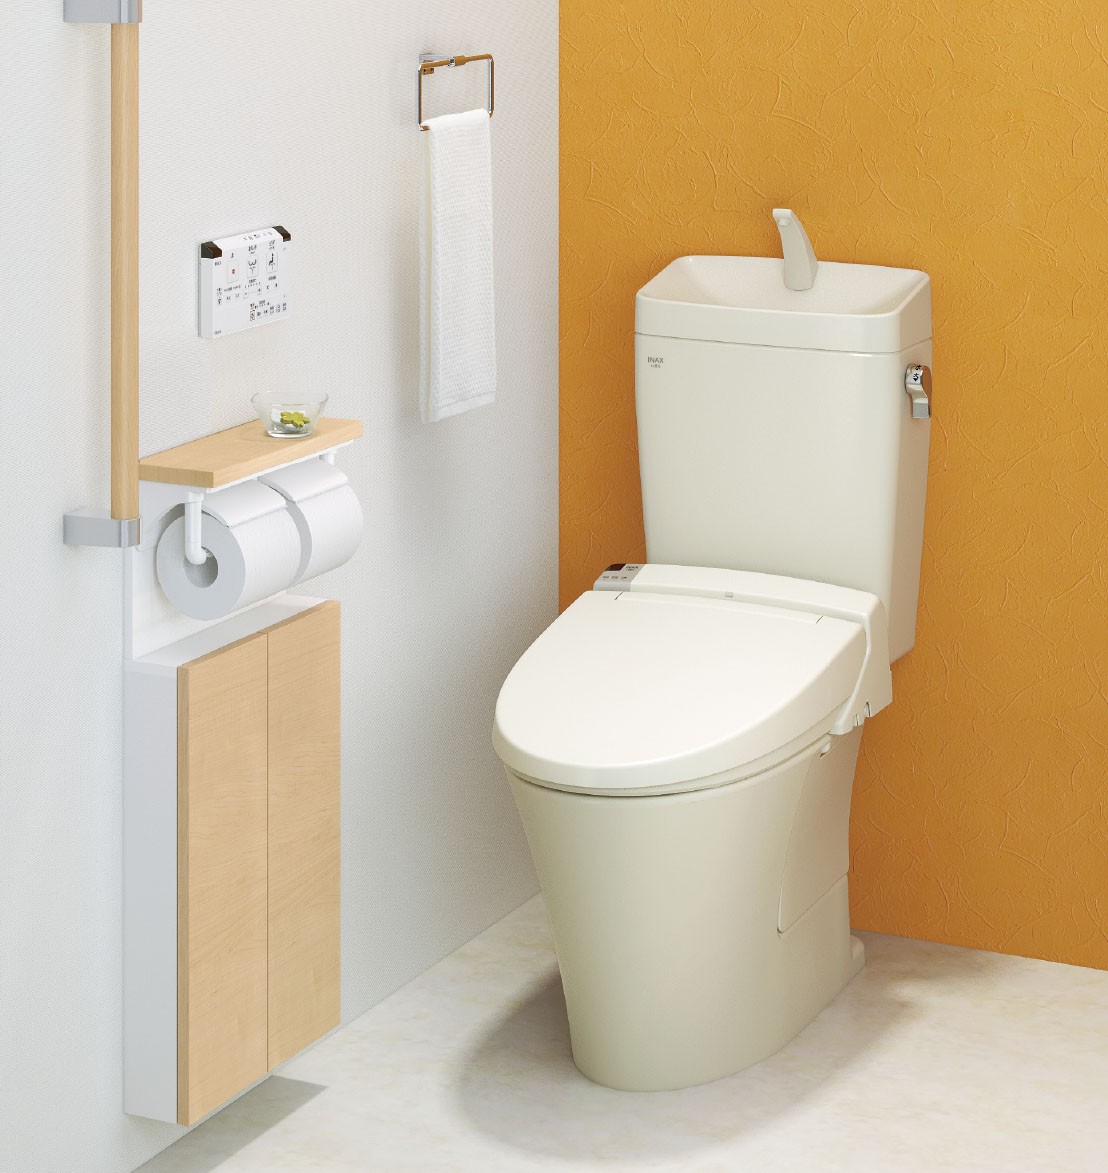 トイレの選び方 | あると便利な機能一覧と大手メーカー3社比較 | カインズ・リフォーム